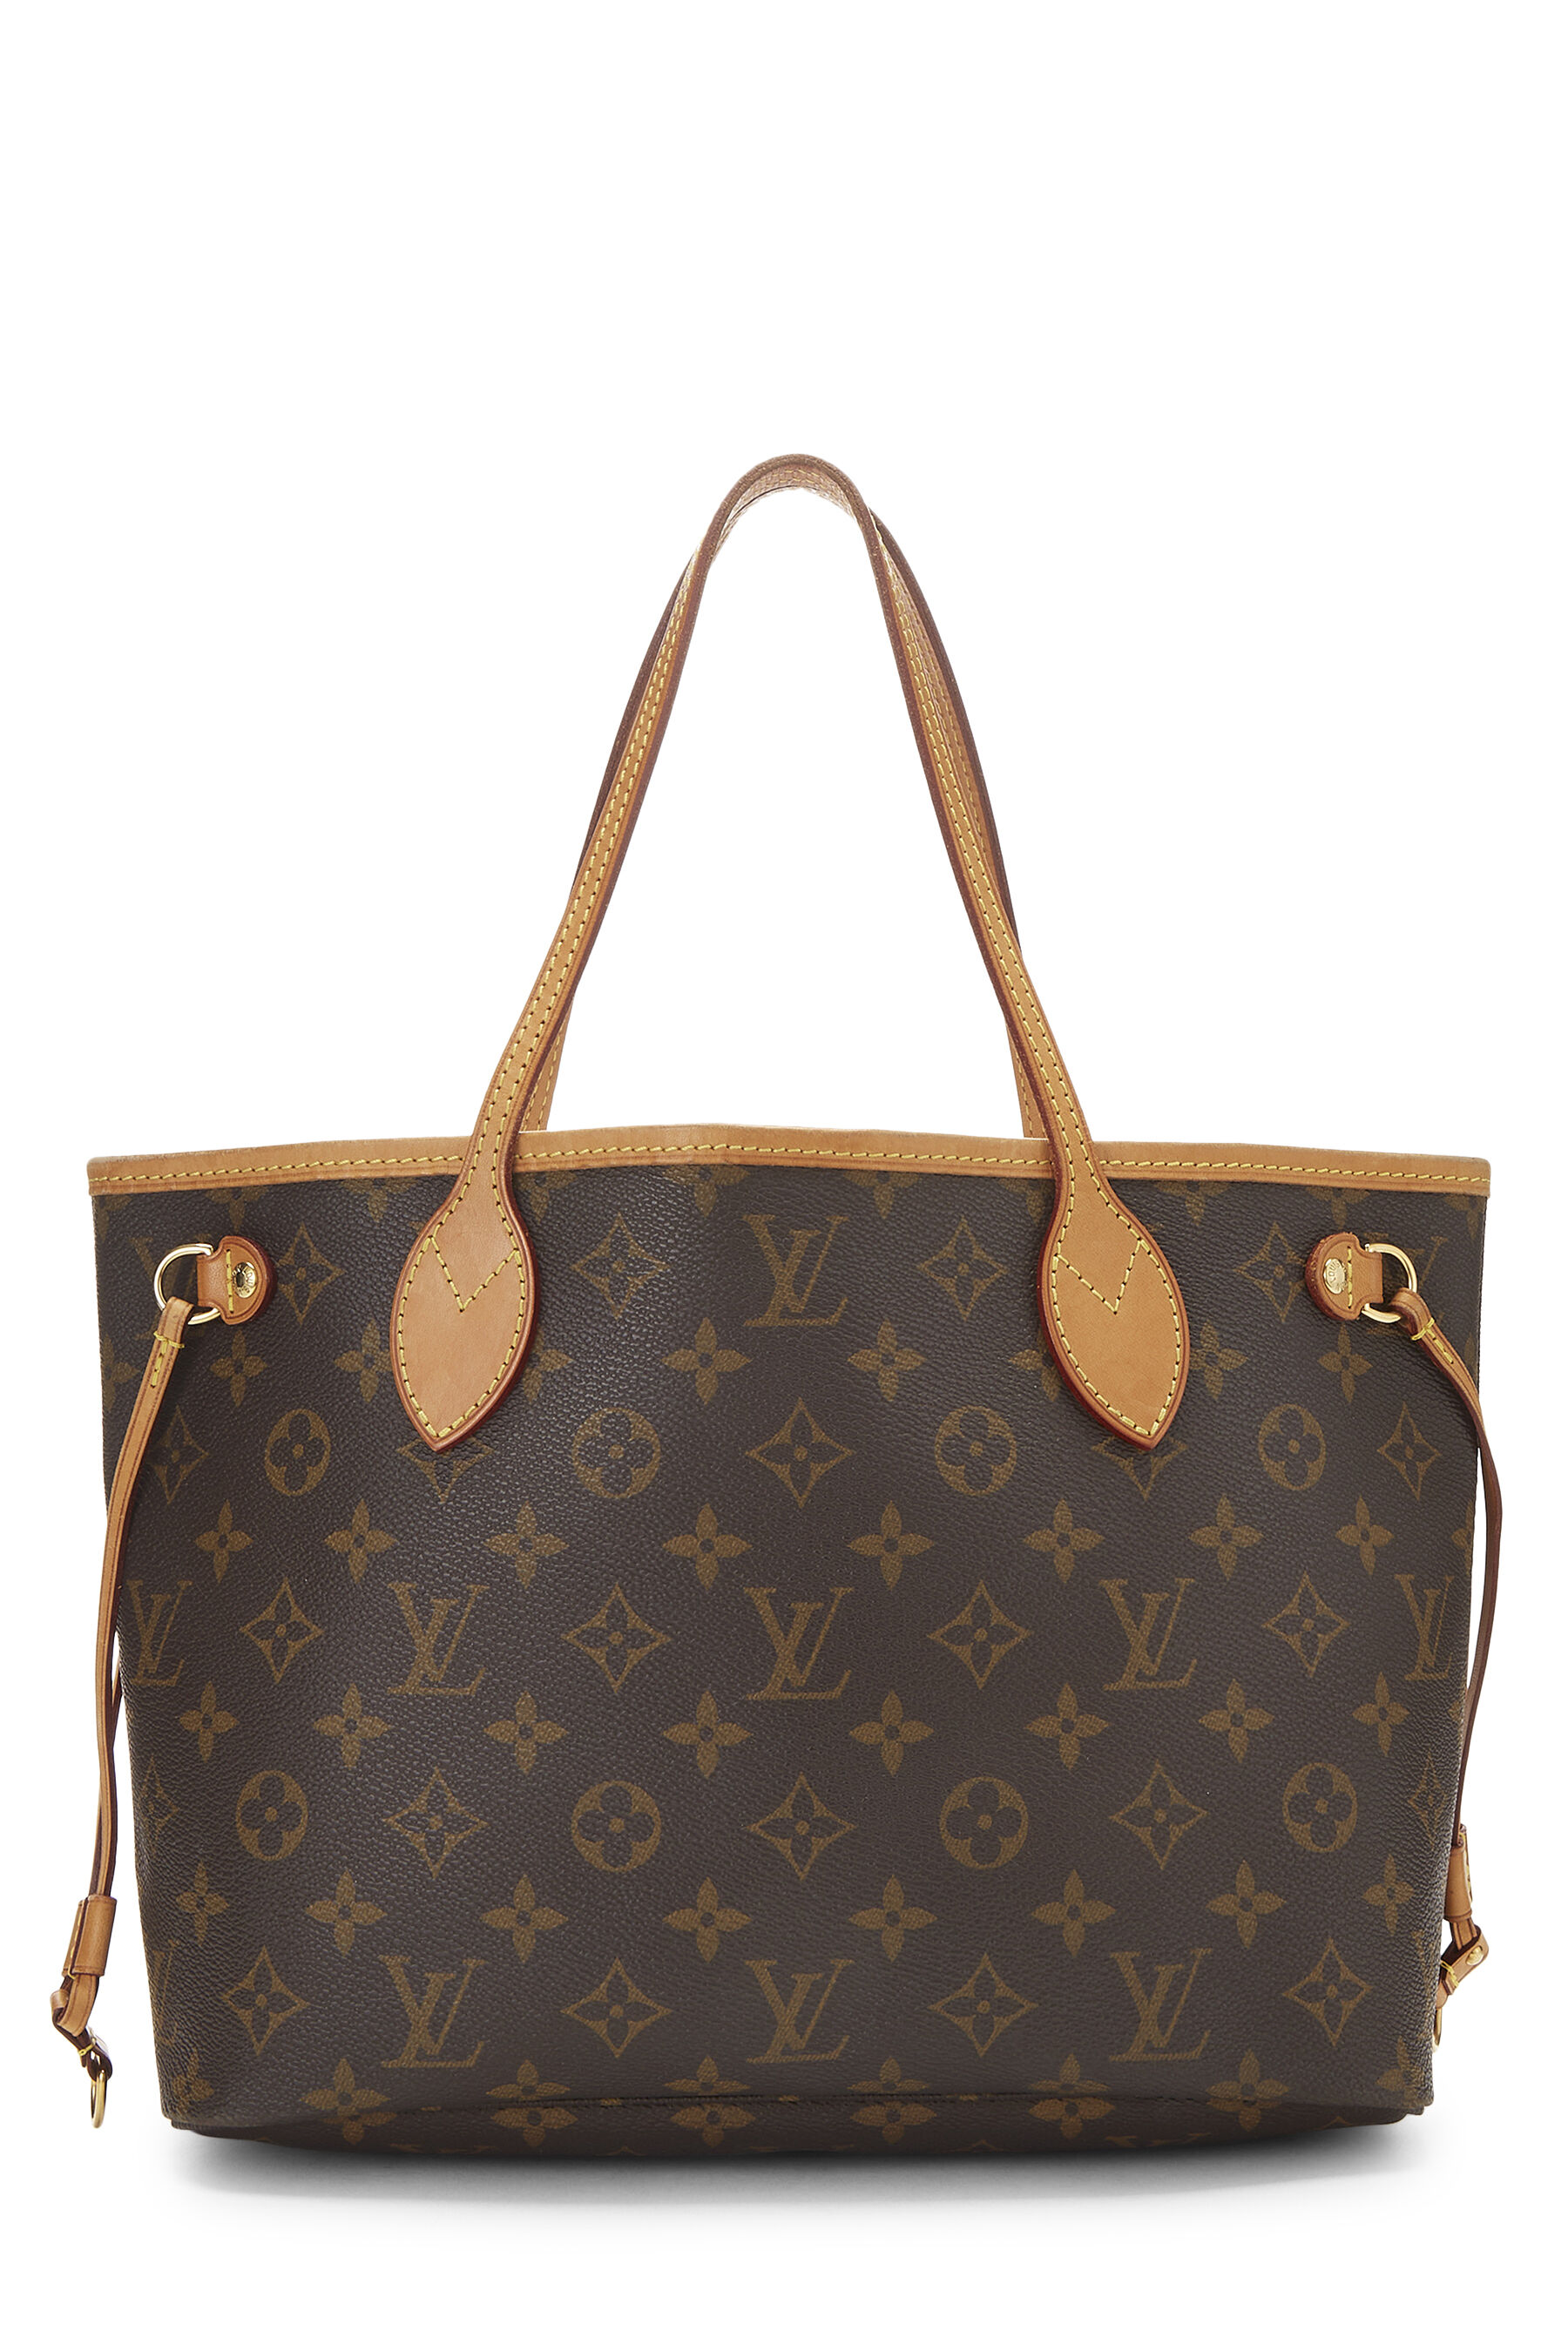 Louis Vuitton, Bags, Authentic Louis Vuitton Monogram Neverfull Pm Bag